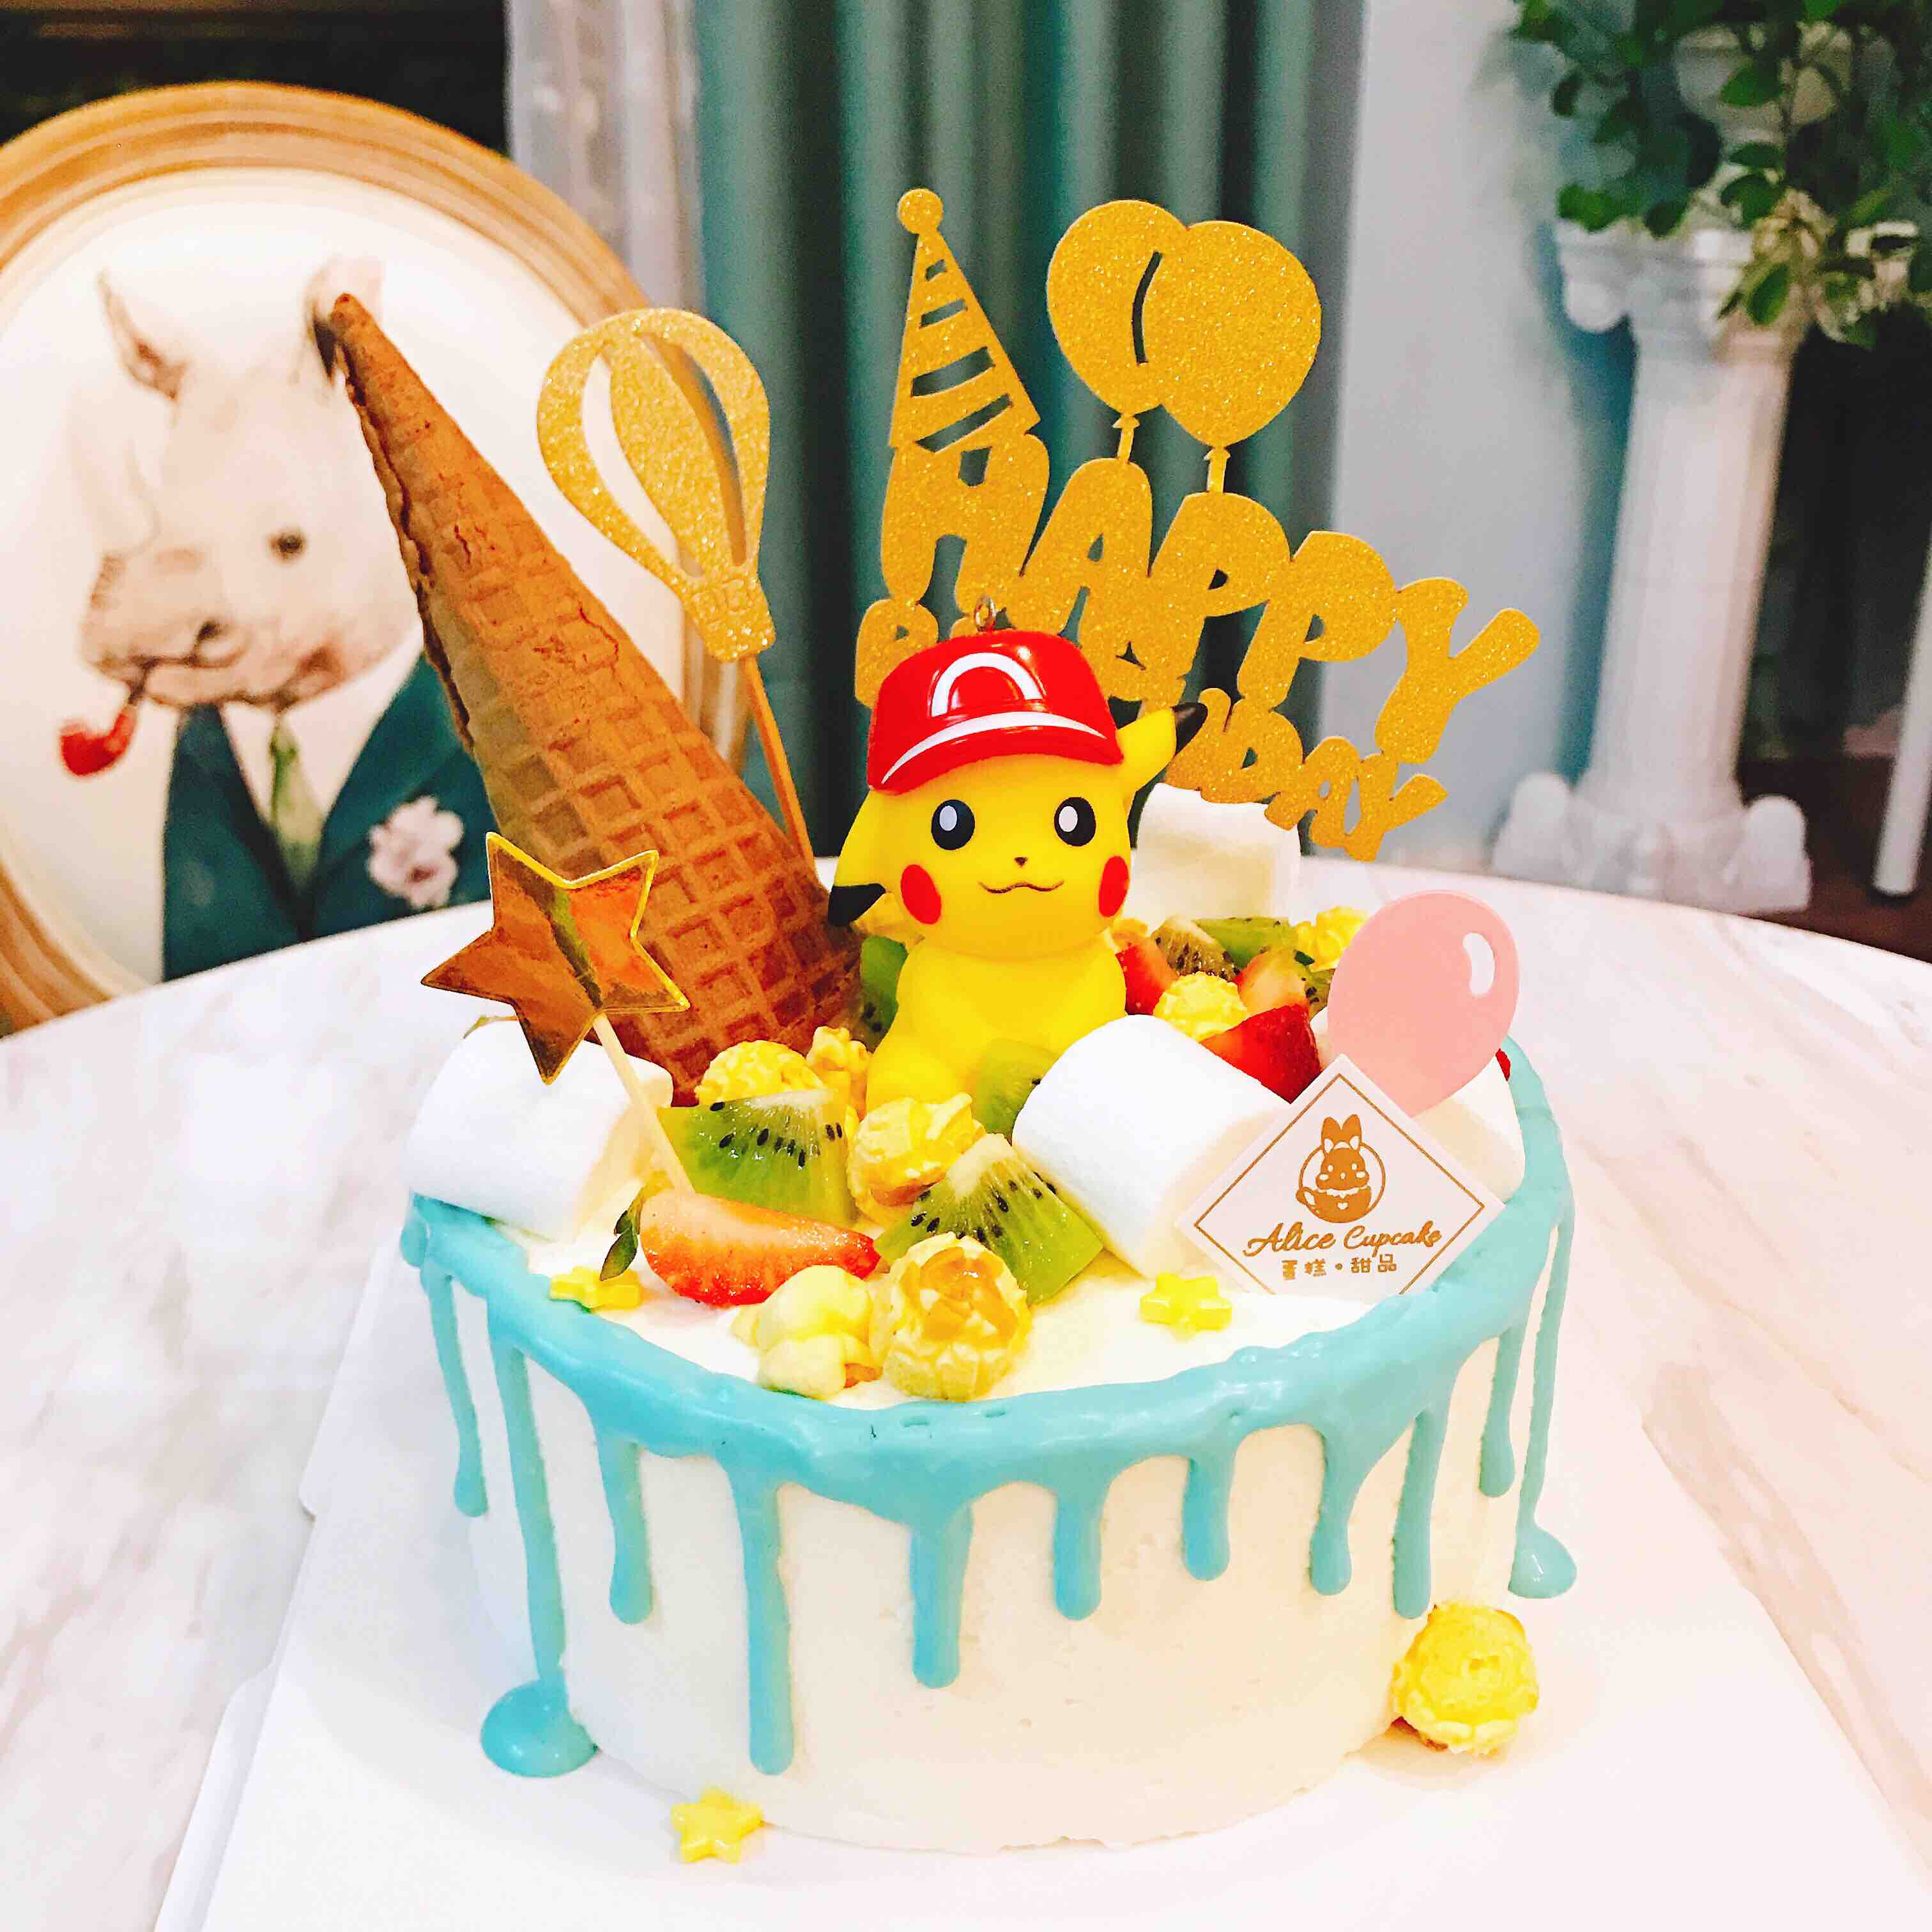 【生日快樂】皮卡丘蛋糕 & 燕燕 - isu9905005a的創作 - 巴哈姆特